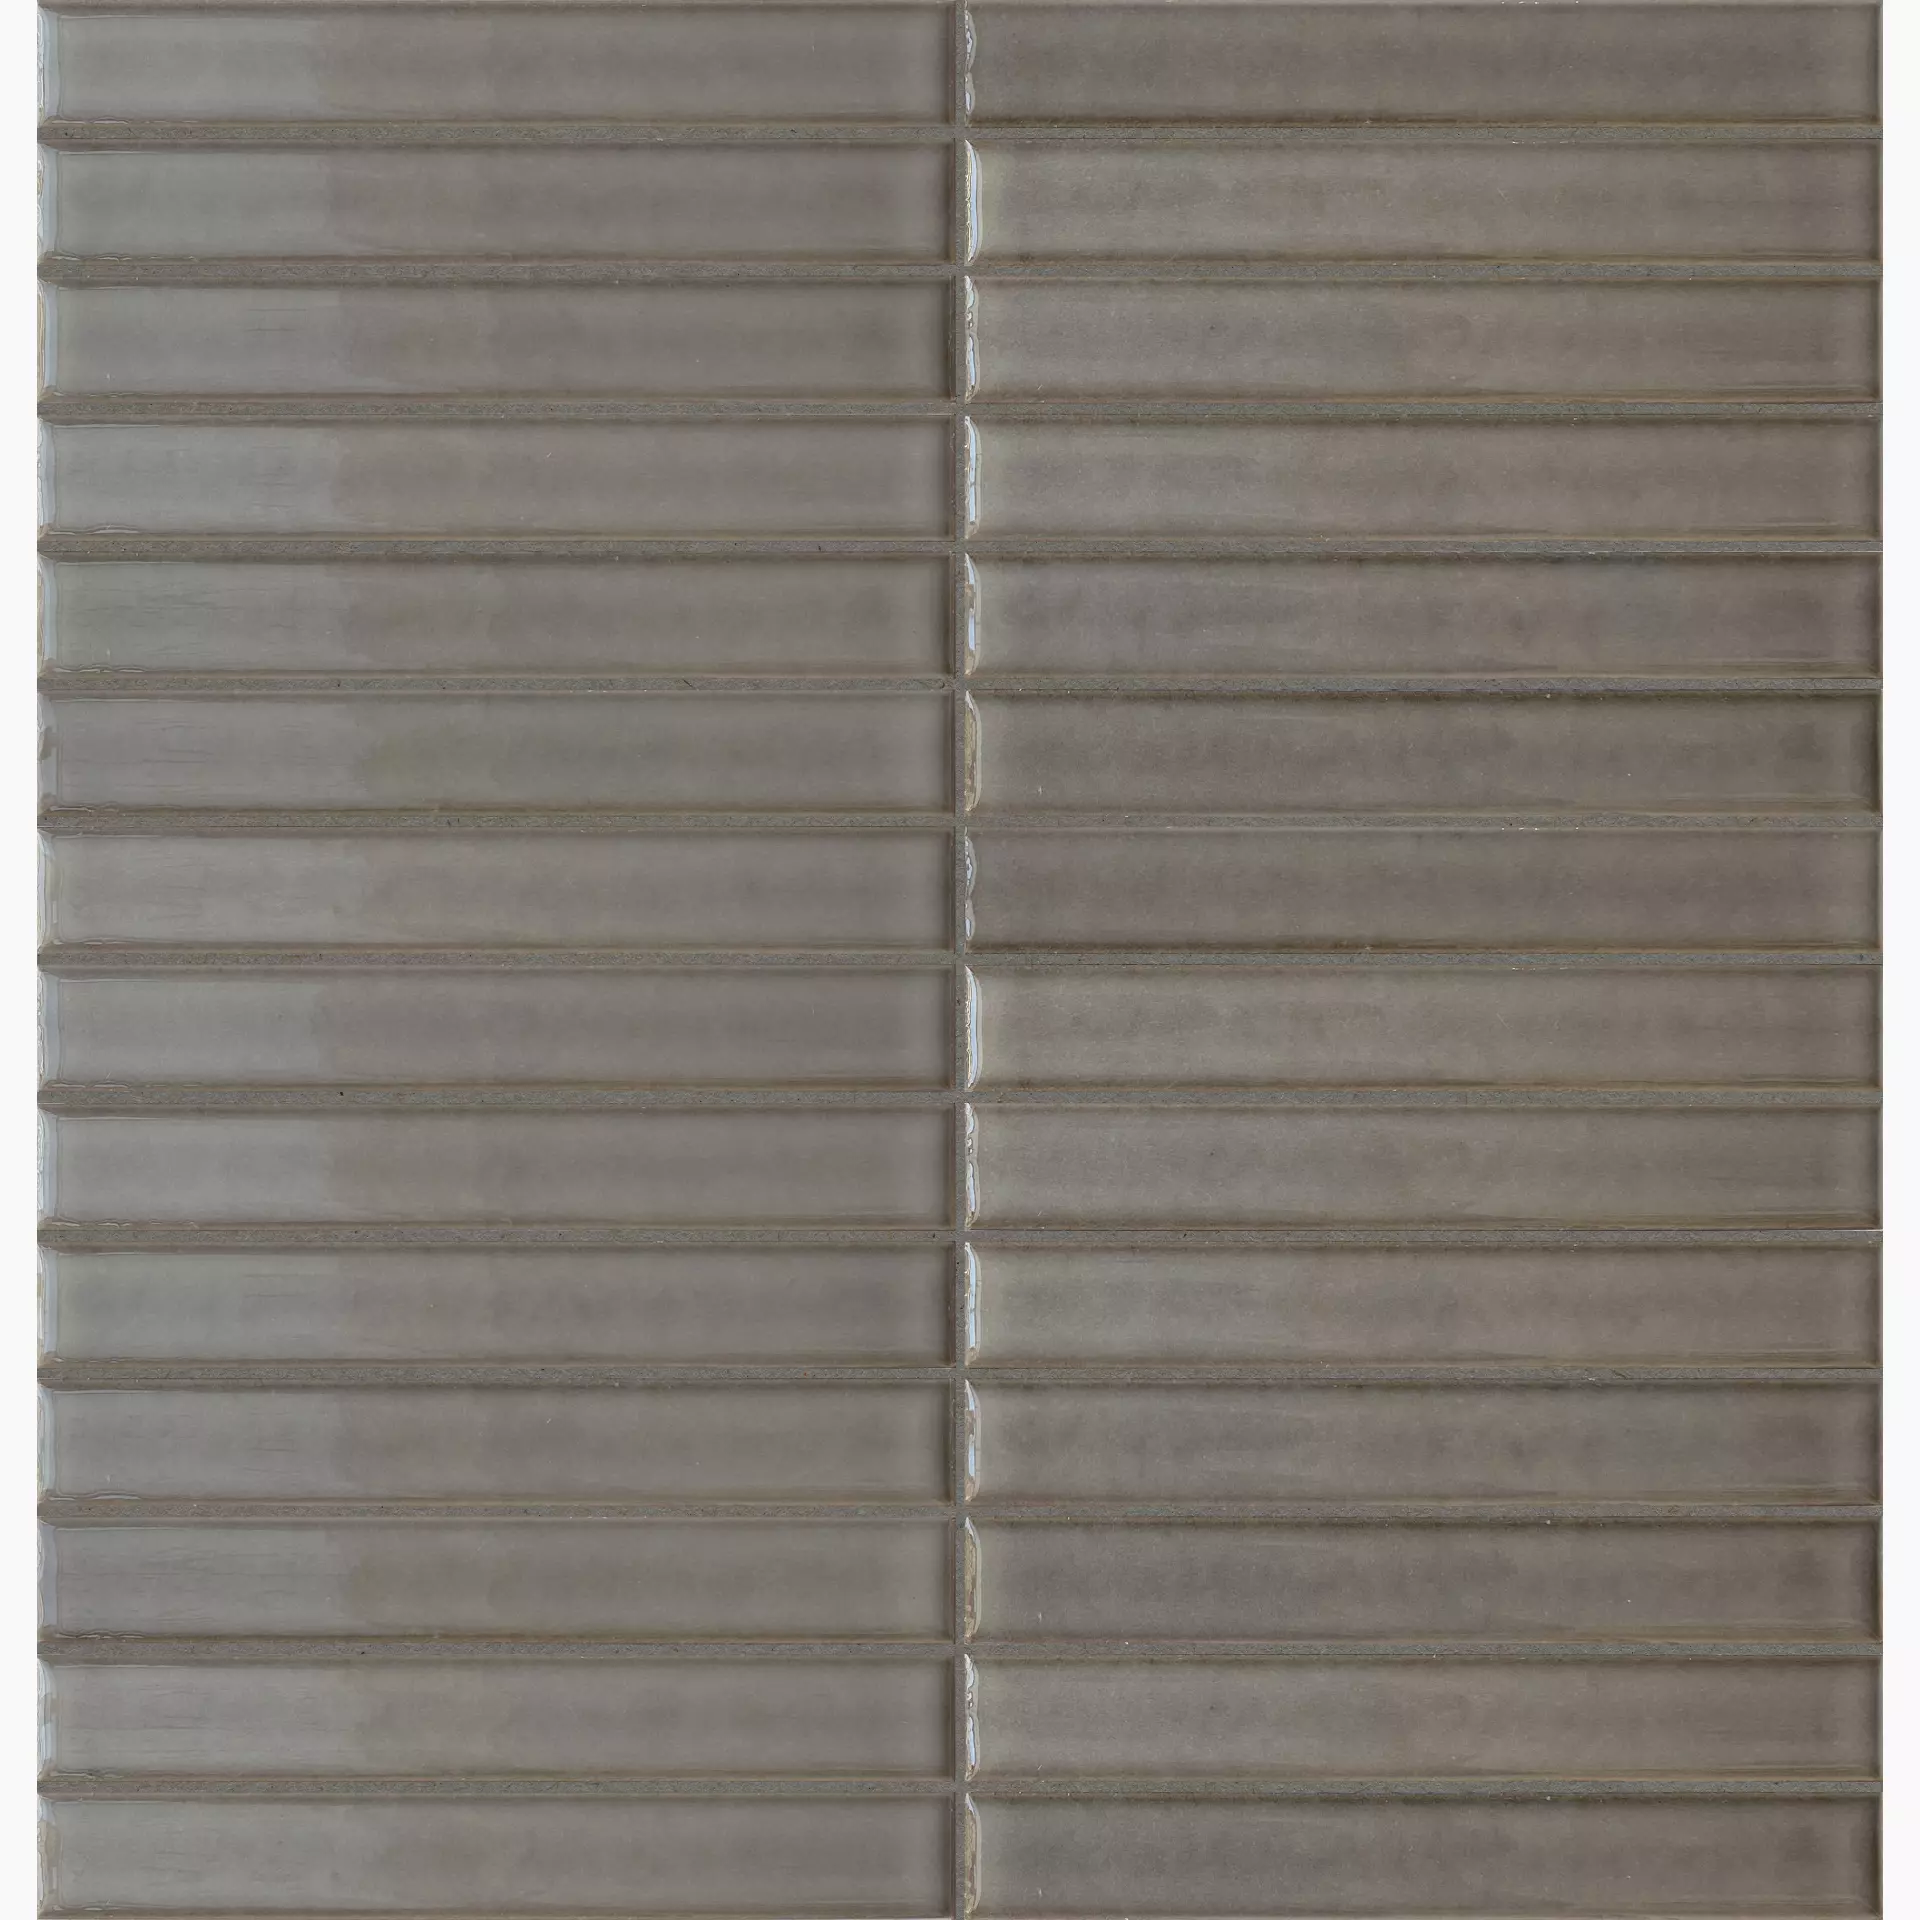 Terratinta Mosaico Stick Soft Brown Glossy Soft Brown TTST39MSG glaenzend 29x30cm Mosaik 5,5mm